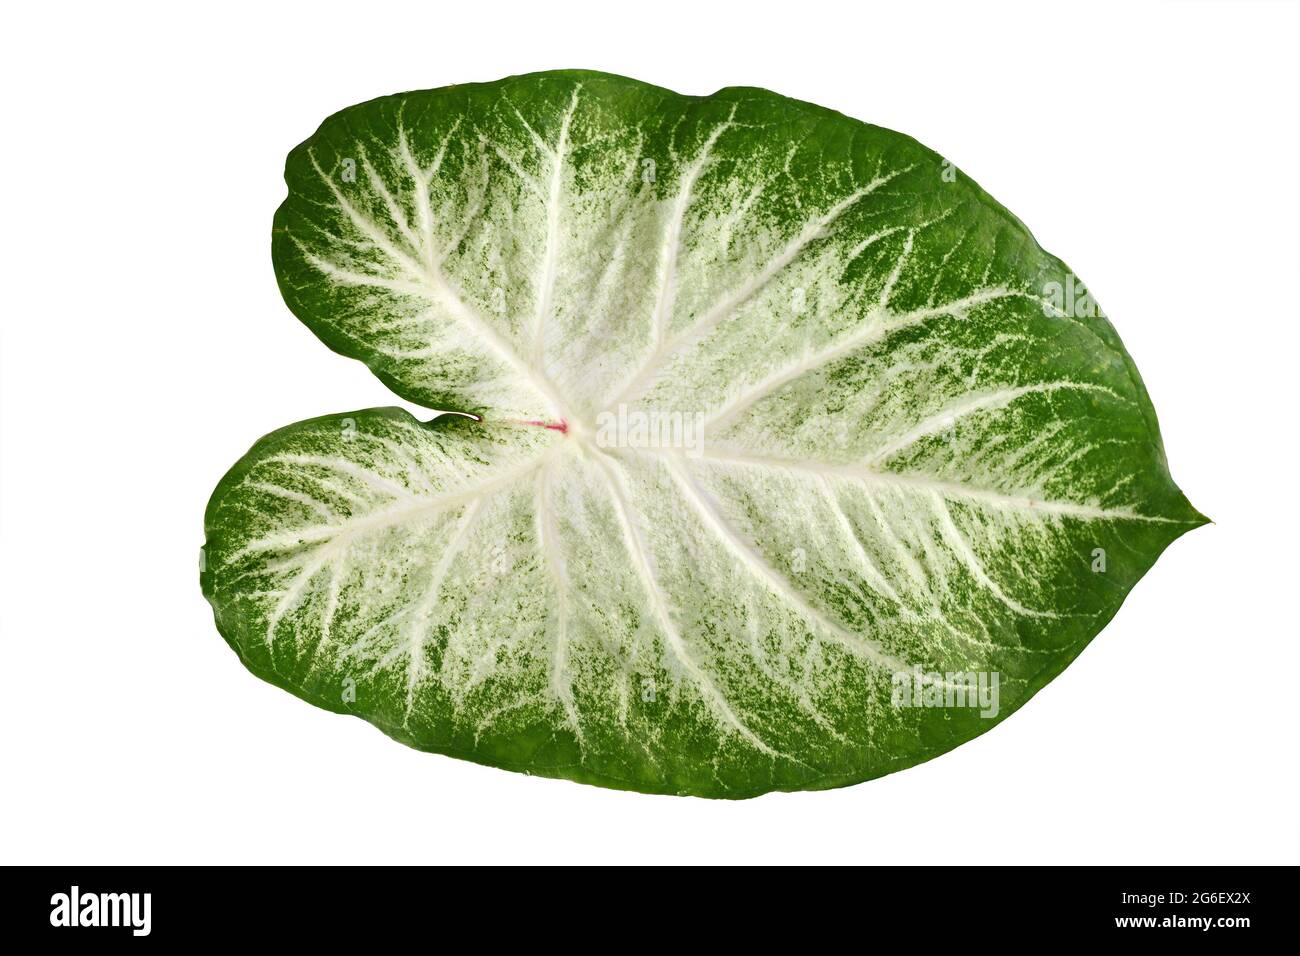 Einzelblatt exotischer 'Caladium Aaron'-Zimmerpflanze mit weißen und grünen Farben isoliert auf weißem Hintergrund Stockfoto